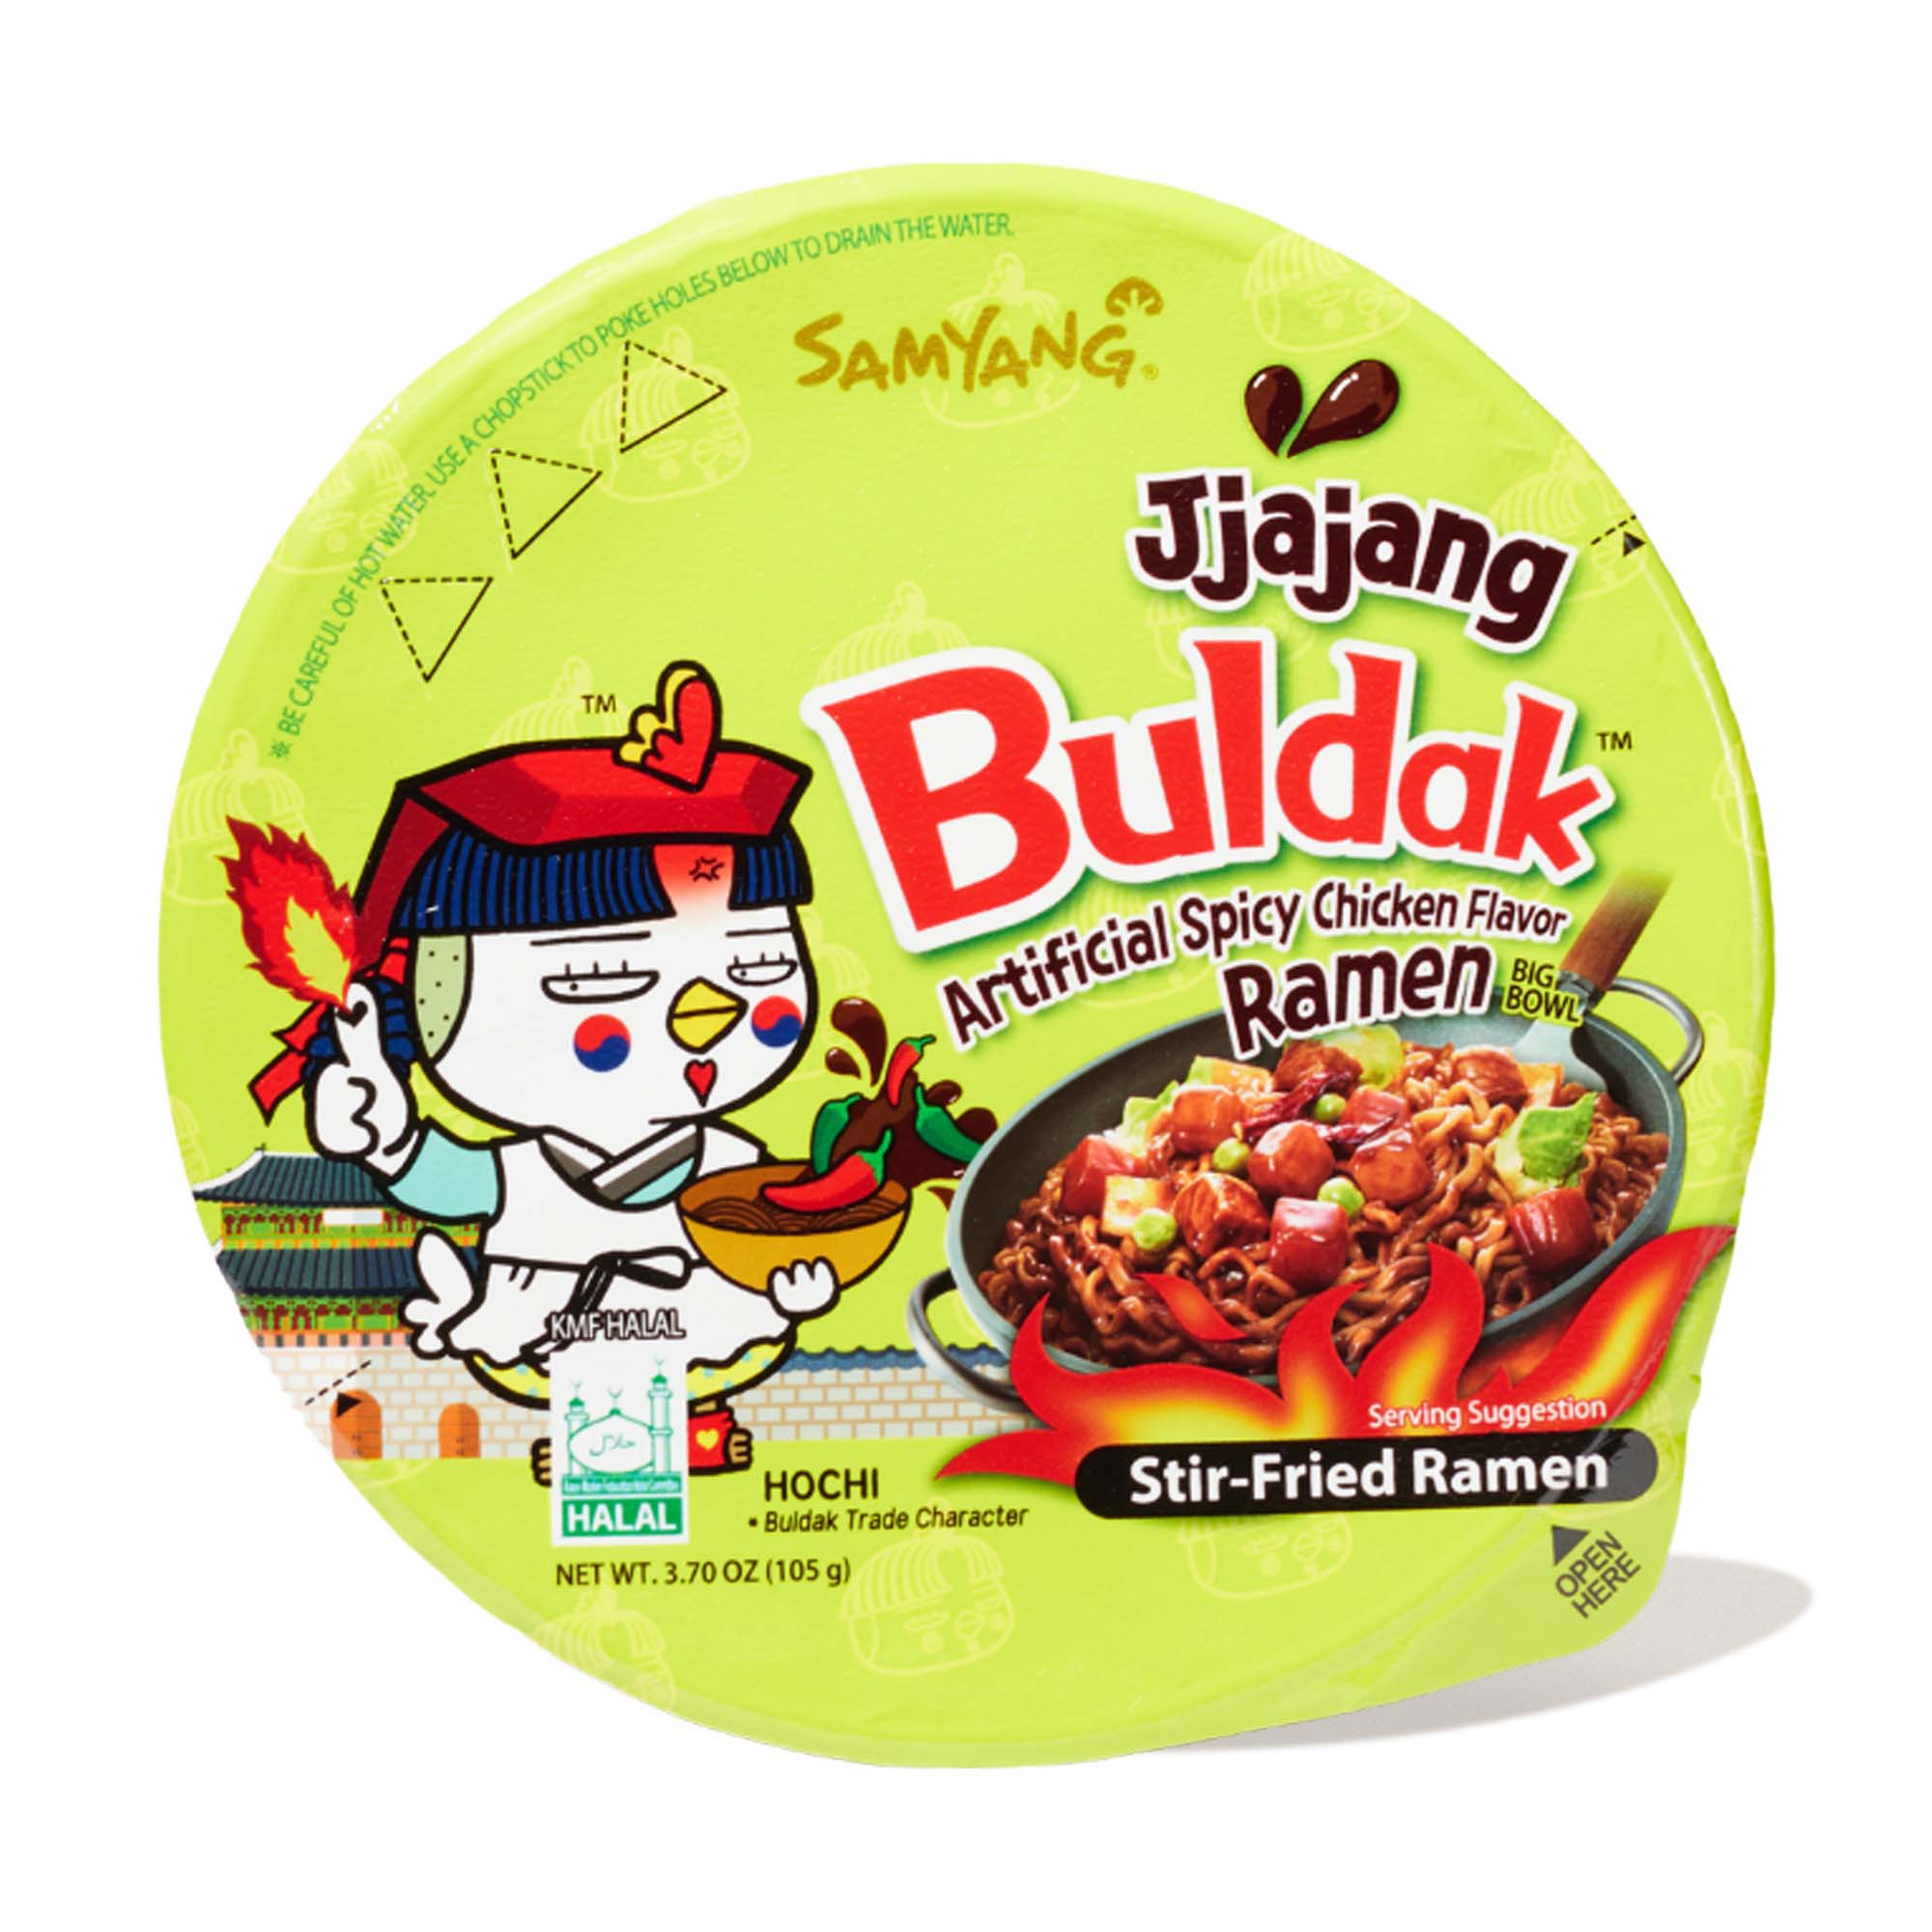 Gárgaras Regaño fecha Samyang Buldak Jjajang Hot Chicken Ramen Big Bowl | Bokksu Market